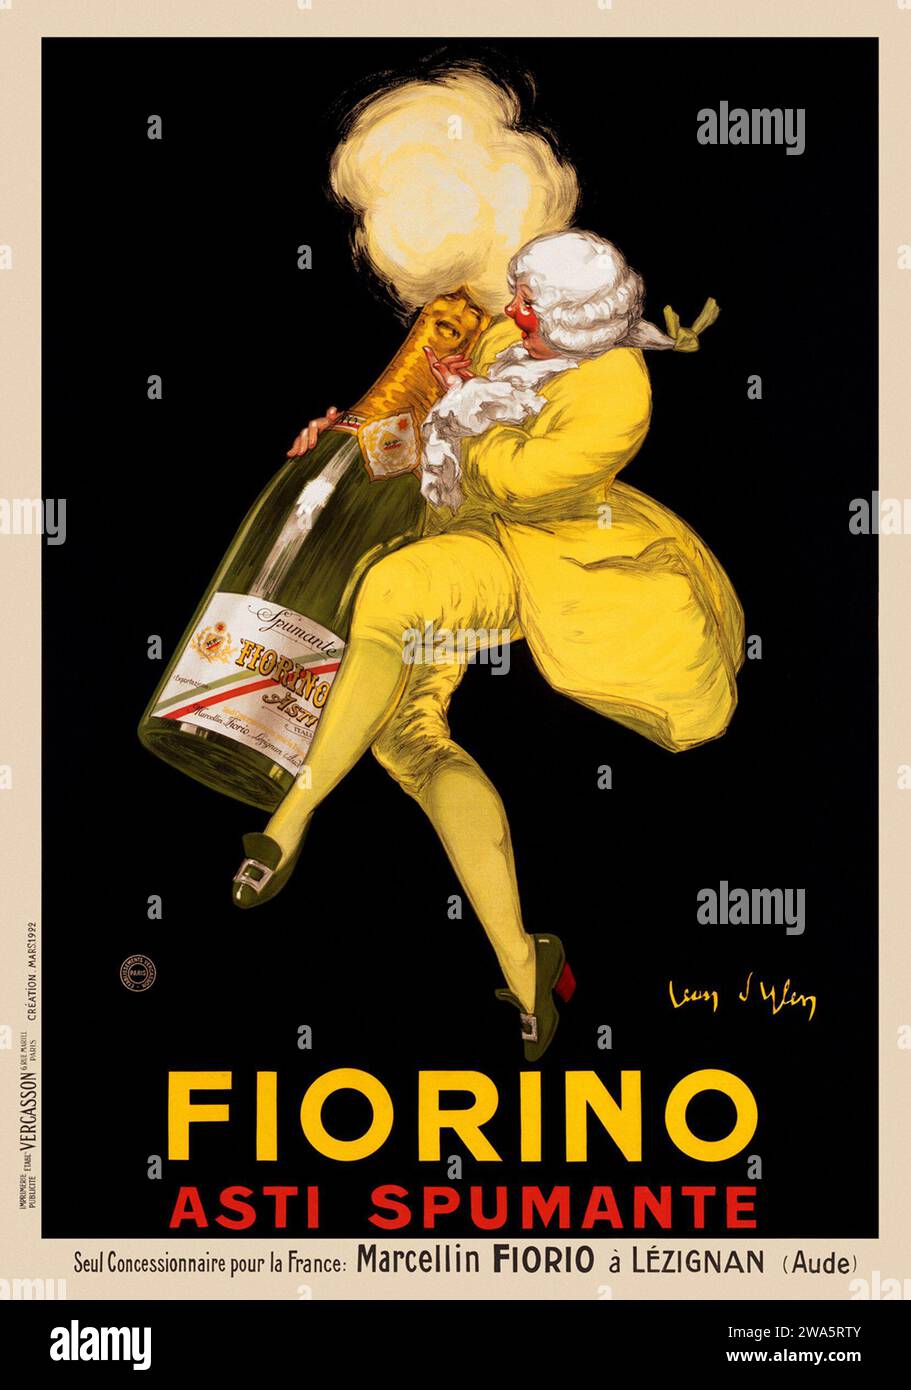 Fiorino Asti Spumante Champagne - Jean D'Ylen artwork - France 1922 Stock Photo